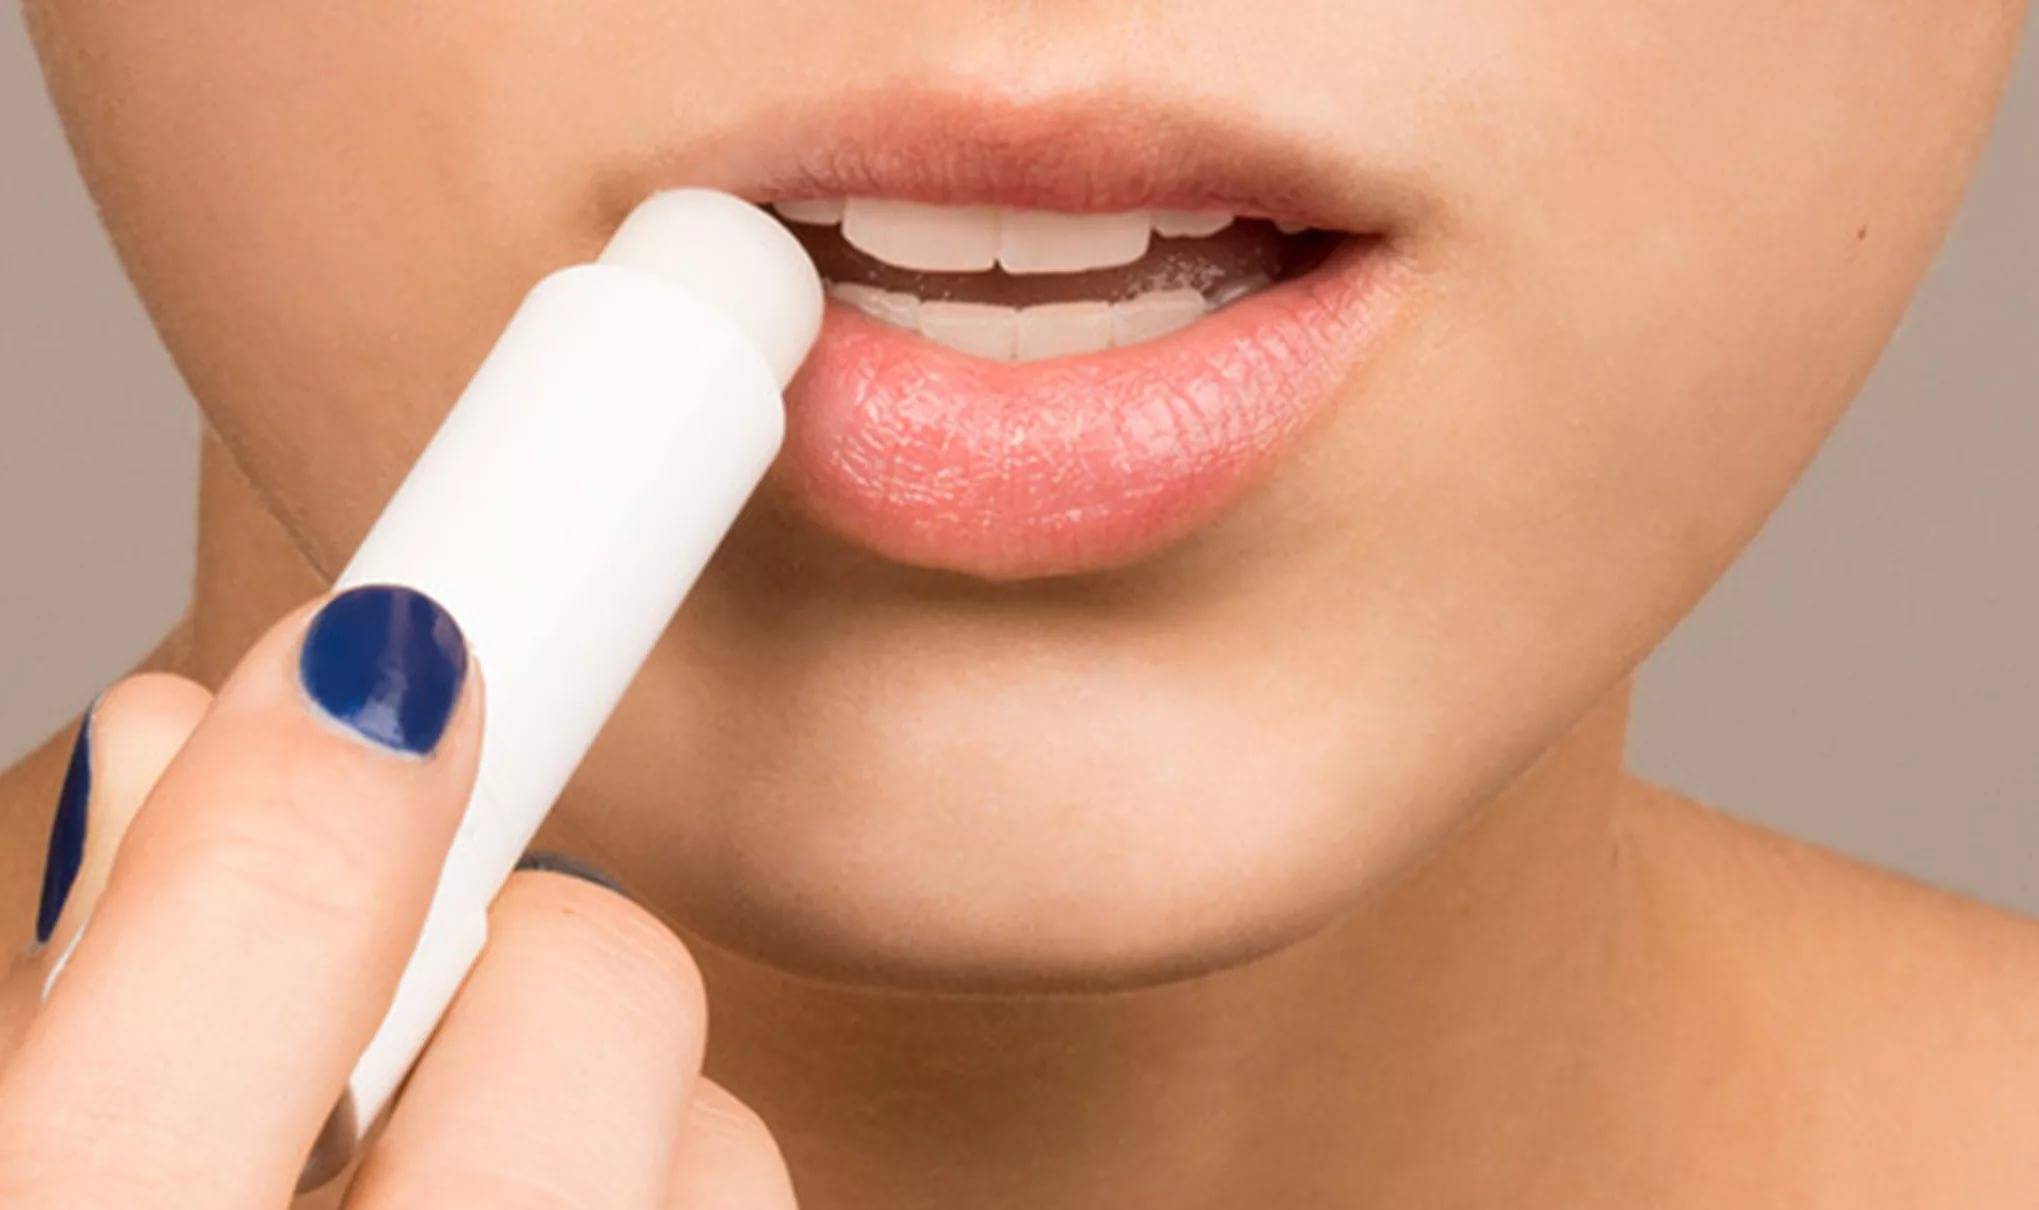 Как сделать губы больше и пухлее в домашних условиях с помощью карандаша и помады